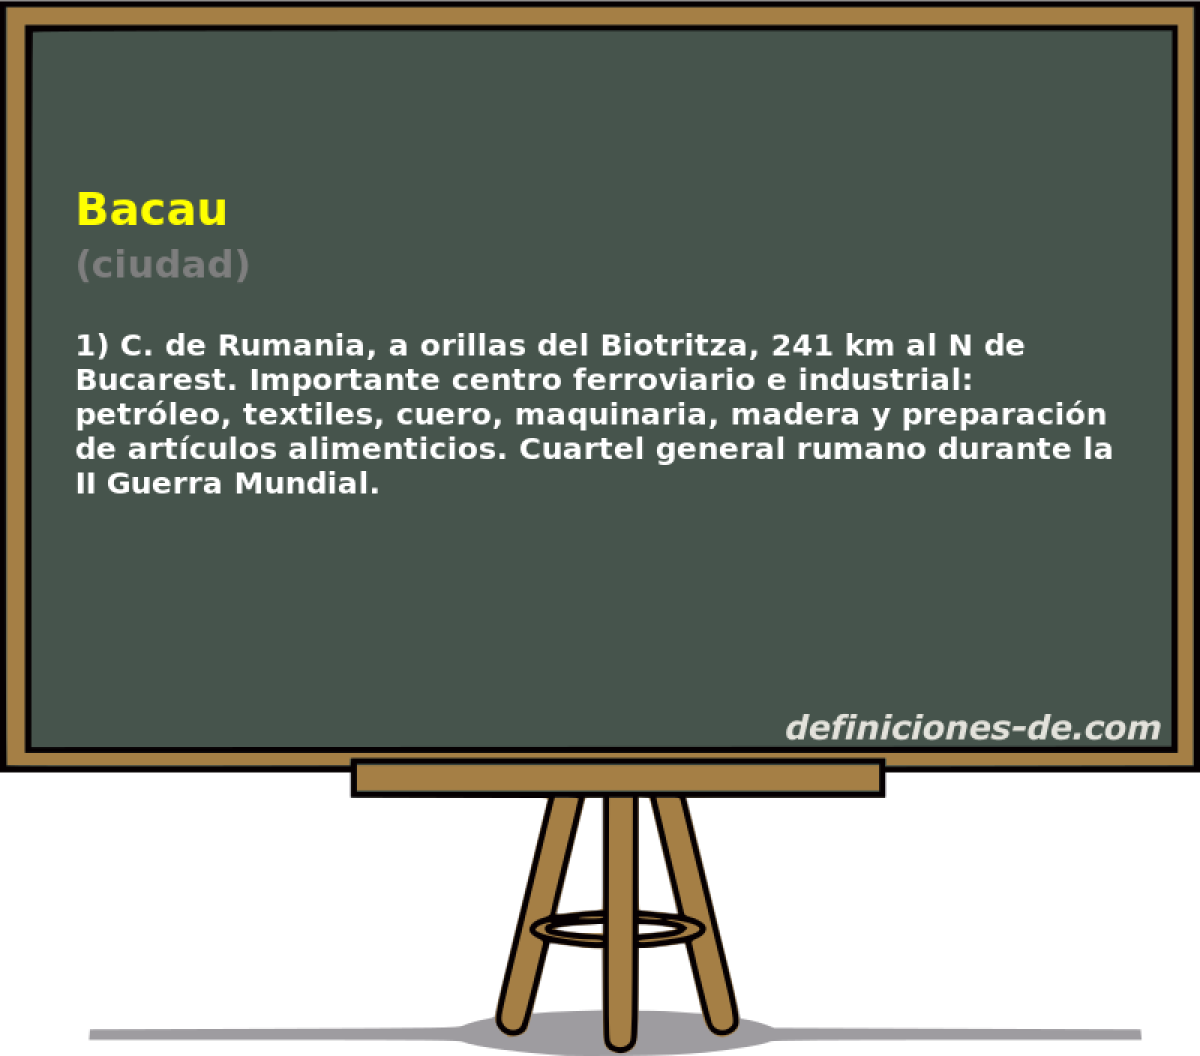 Bacau (ciudad)